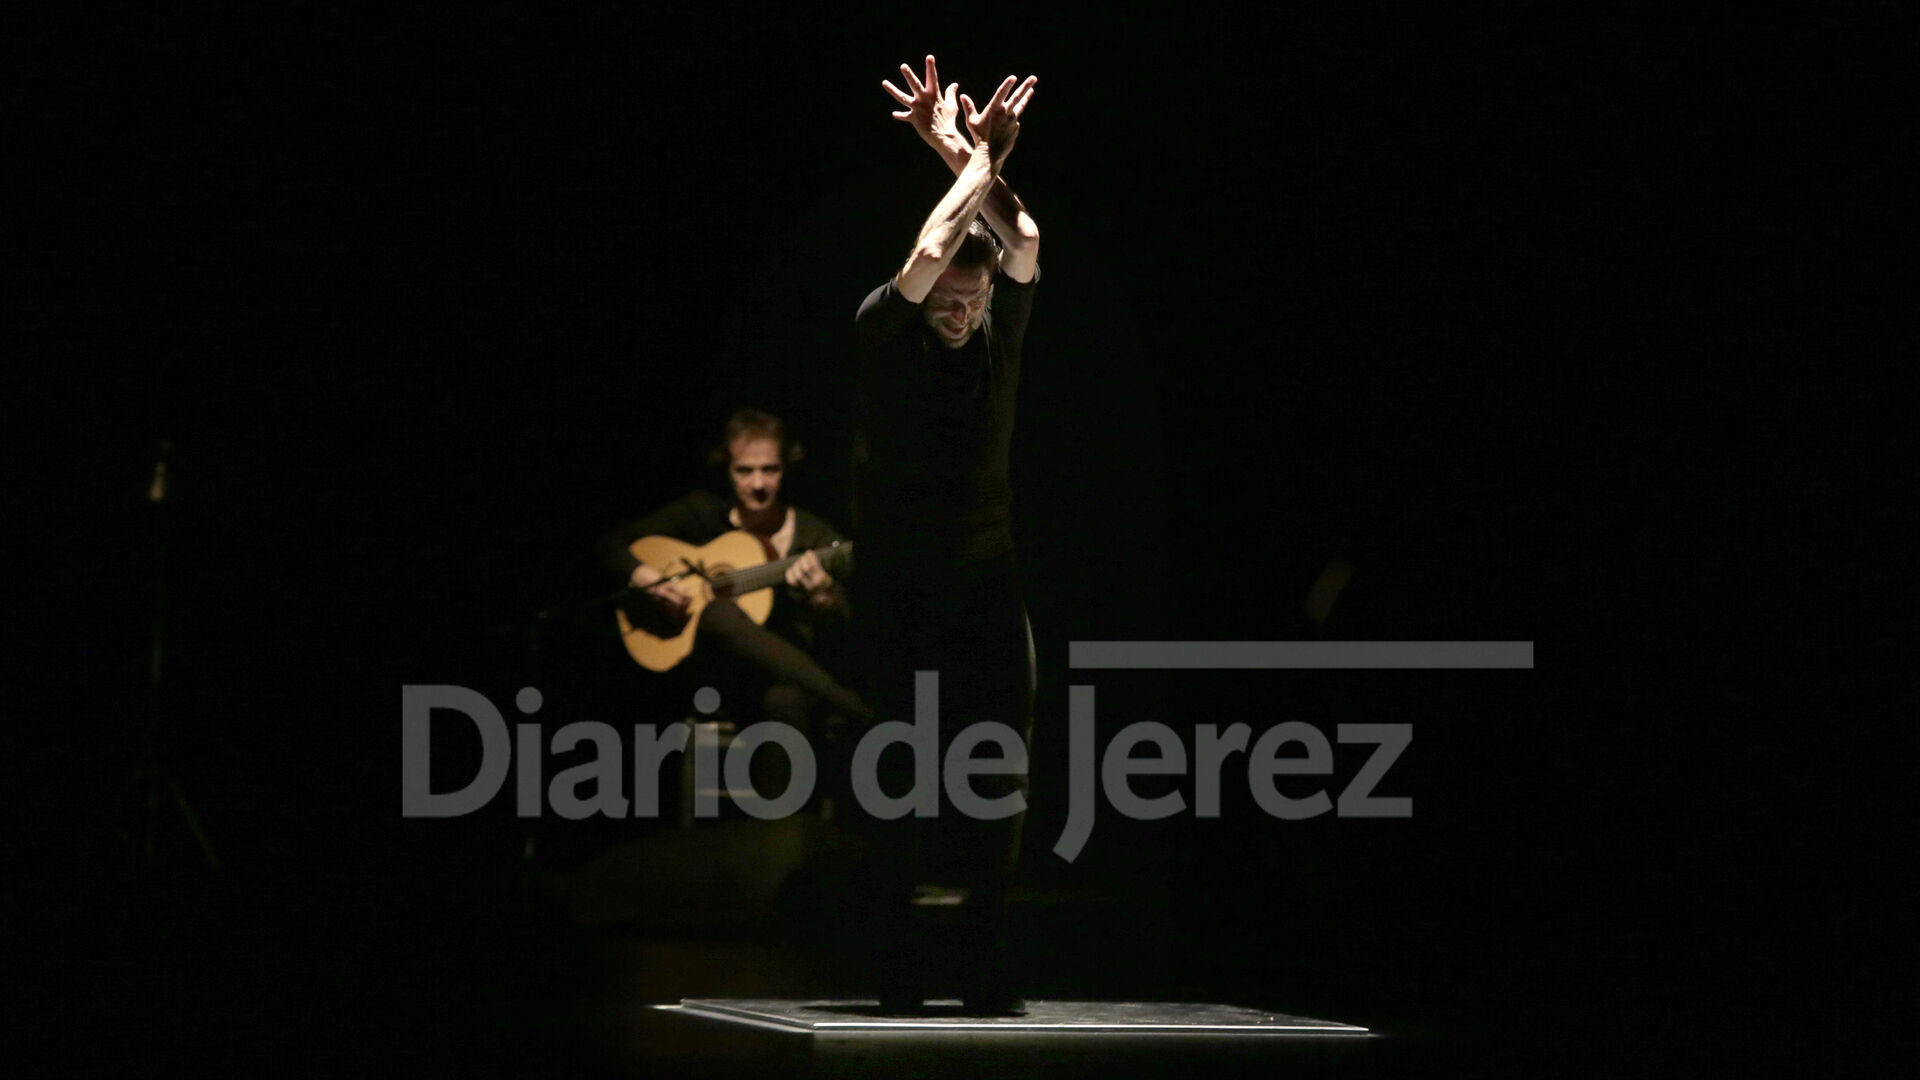 Andr&eacute;s Mar&iacute;n con Carta blanca "mi flamenco impuro" en Villamarta